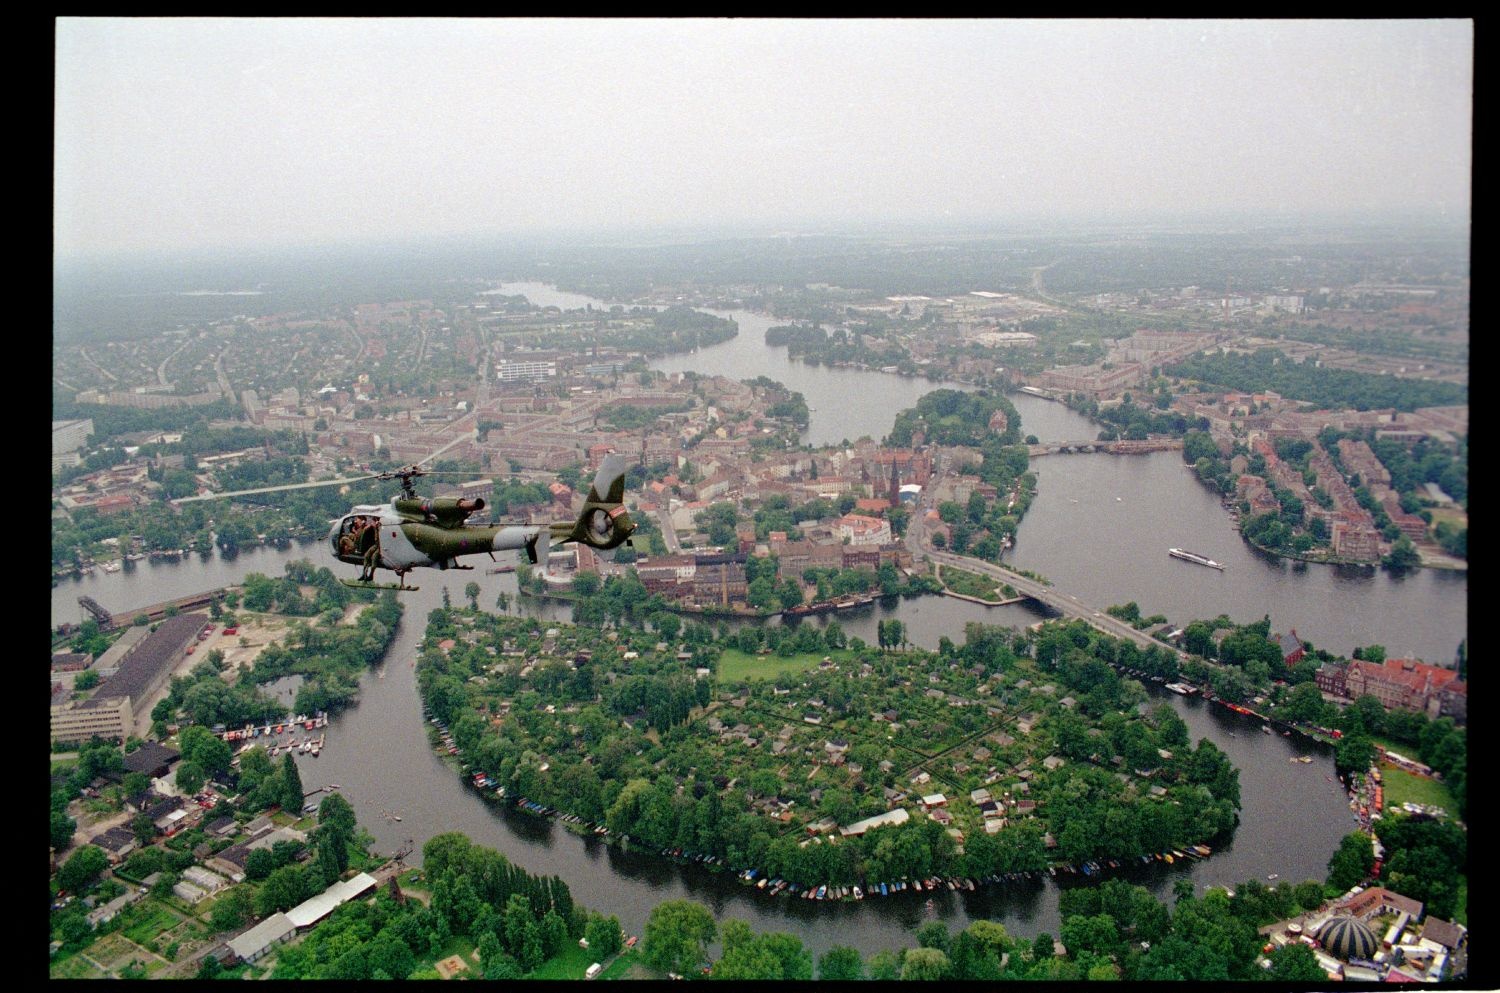 Fotografie: Übungsflug von alliierten Hubschraubern in Berlin (AlliiertenMuseum/U.S. Army Photograph Public Domain Mark)